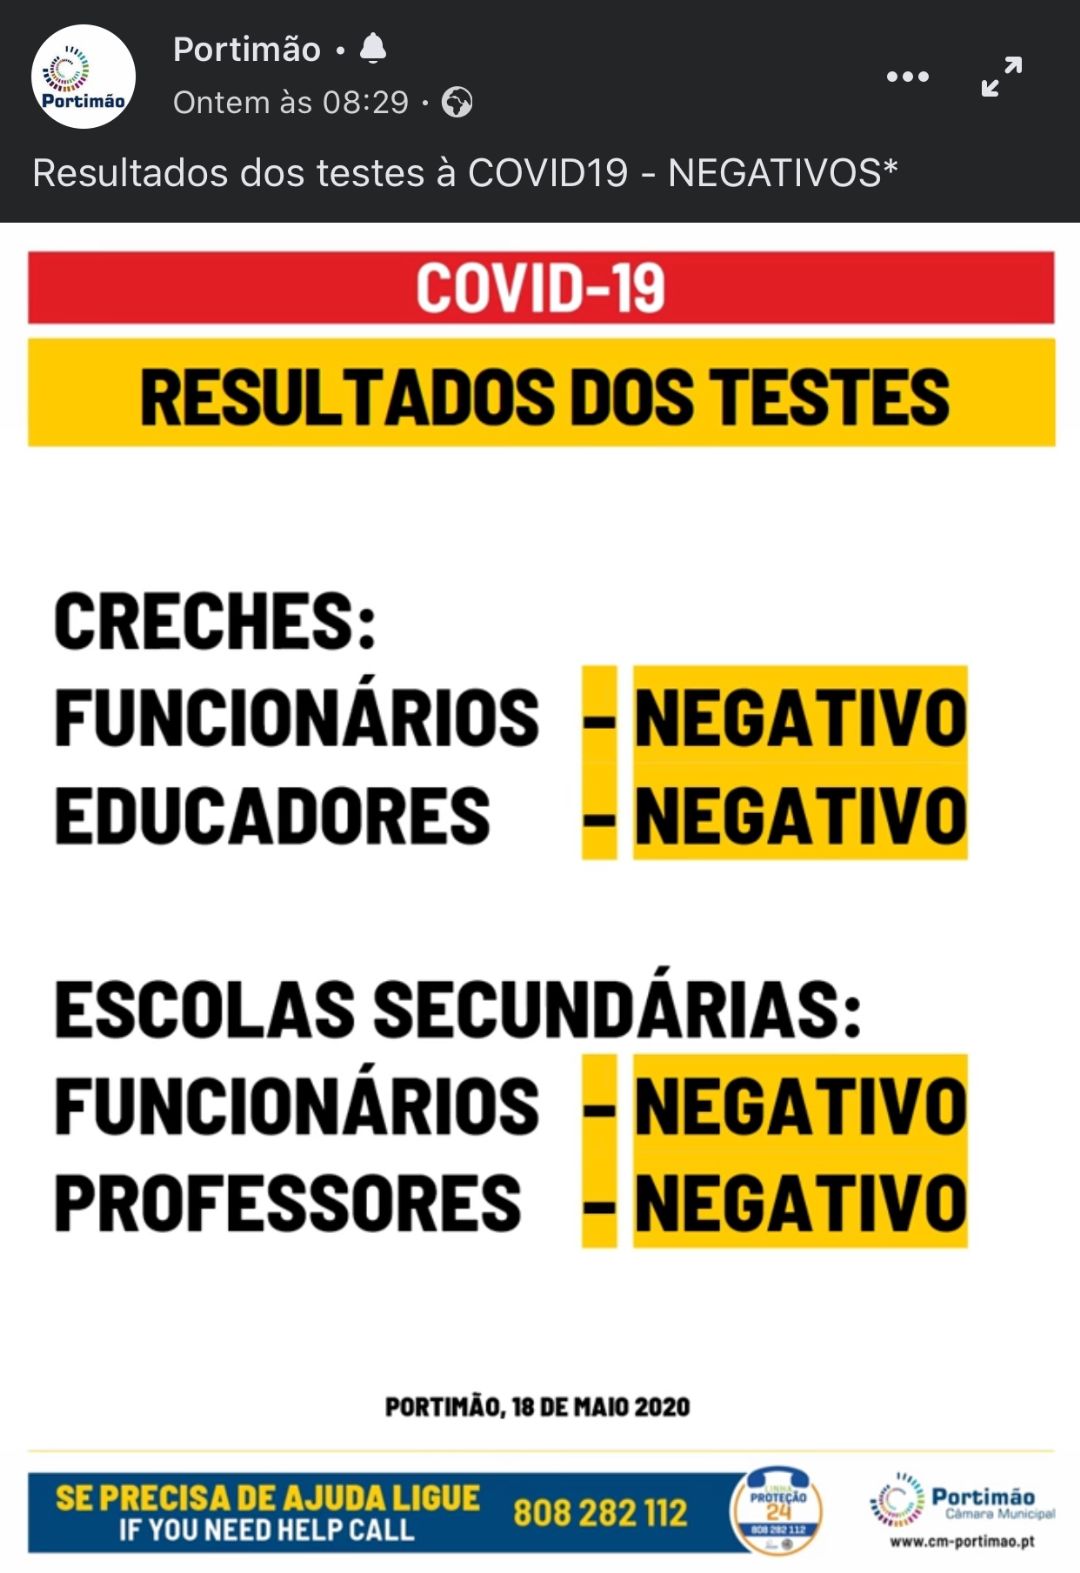 PSD de Portimão lamenta erro grave prestado pelo Município sobre «Testes COVID-19» à comunidade escolar